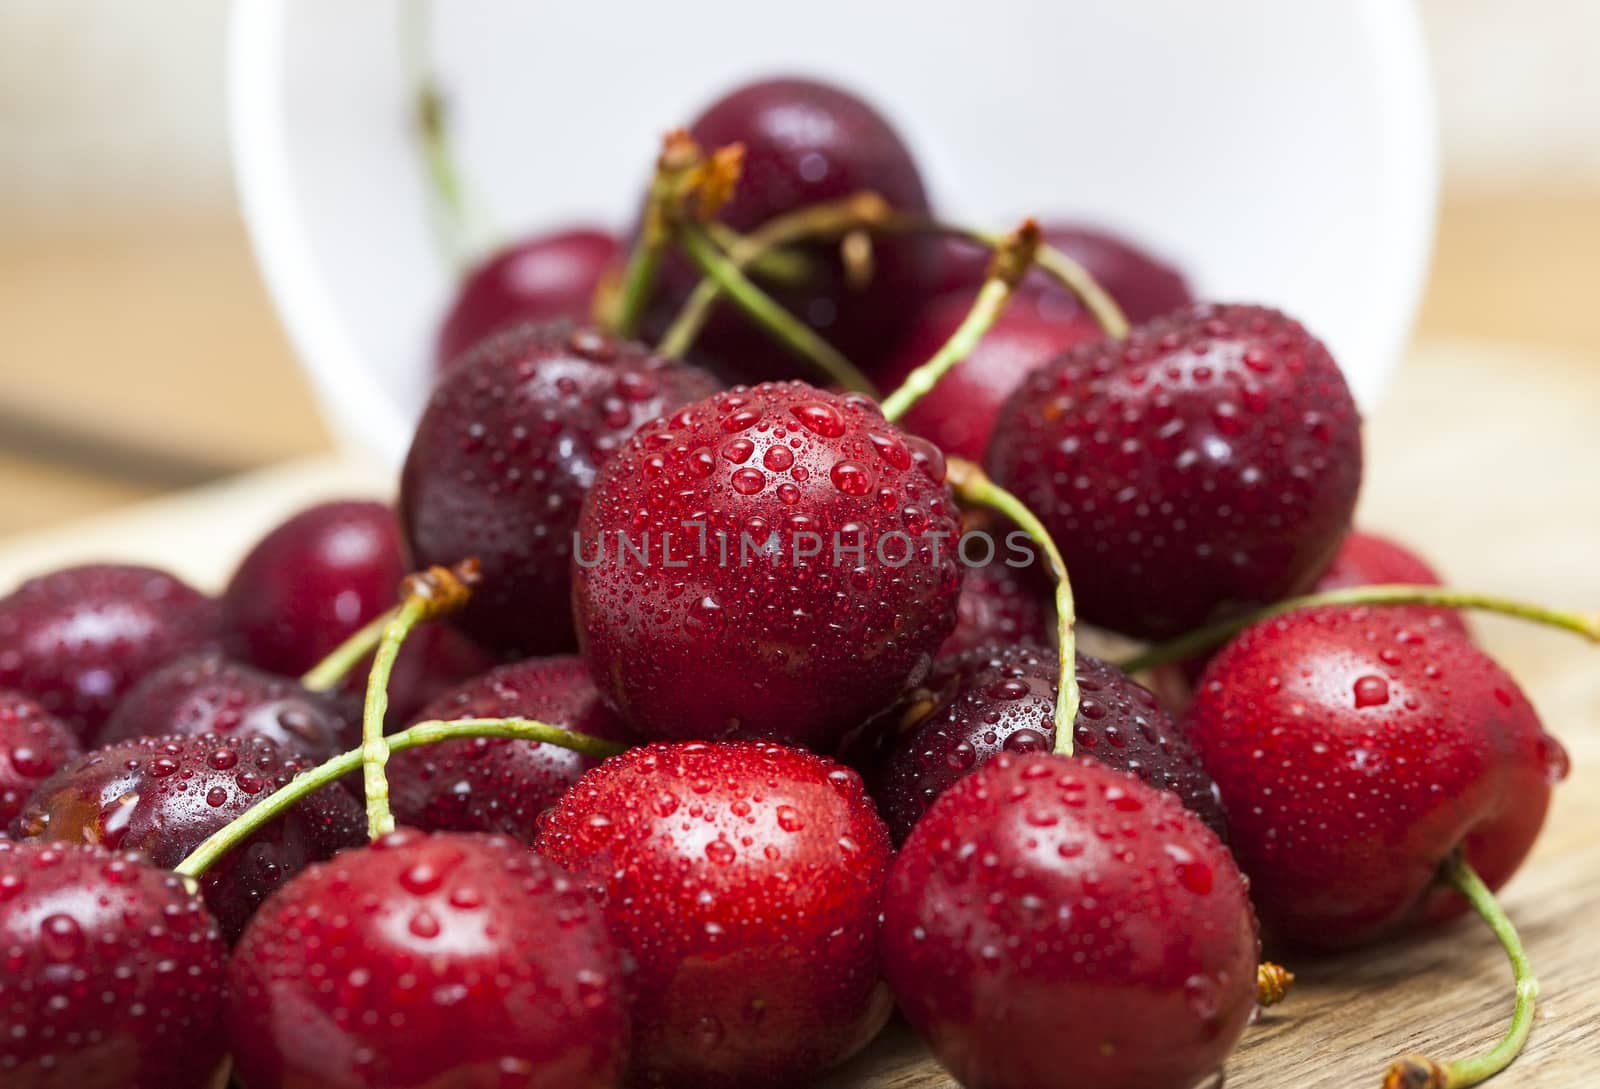 maroon ripe cherries by avq